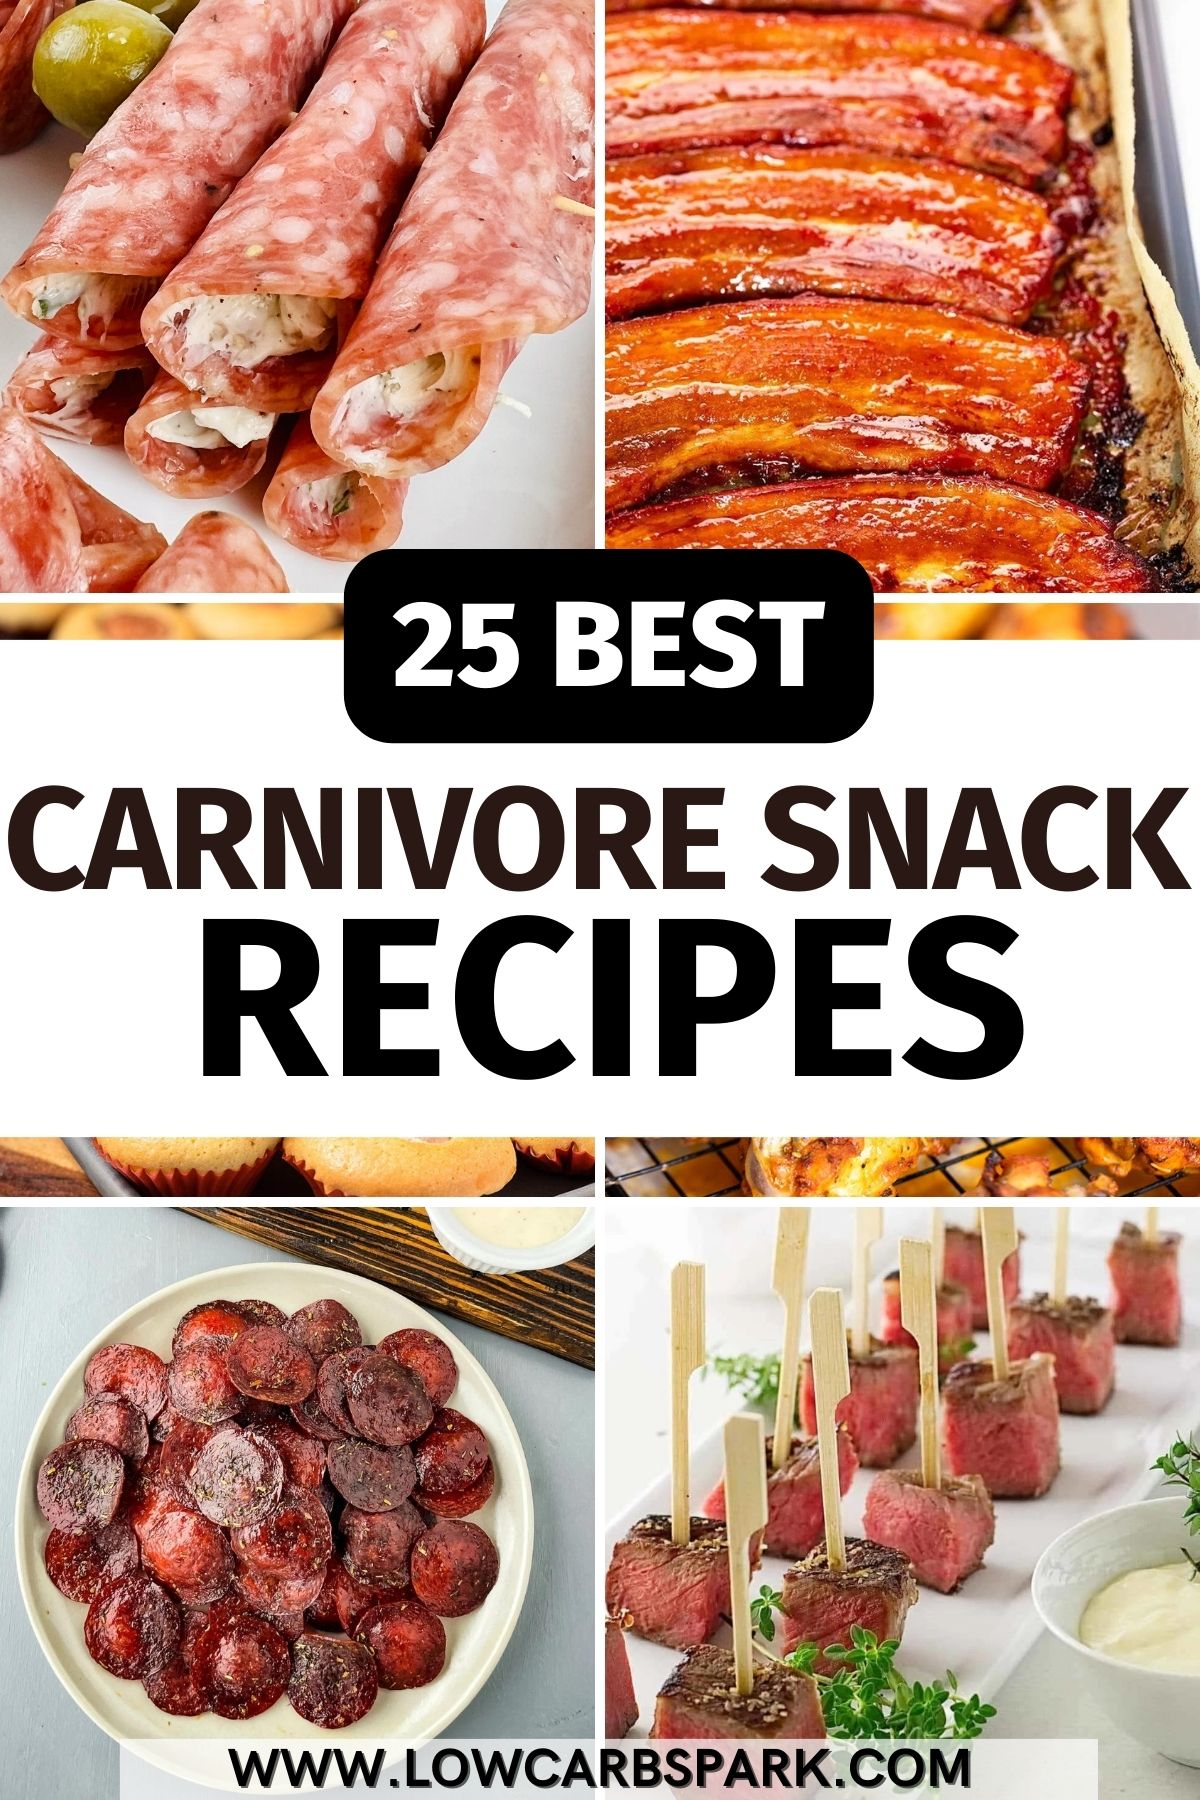 25 Carnivore Snack Recipes